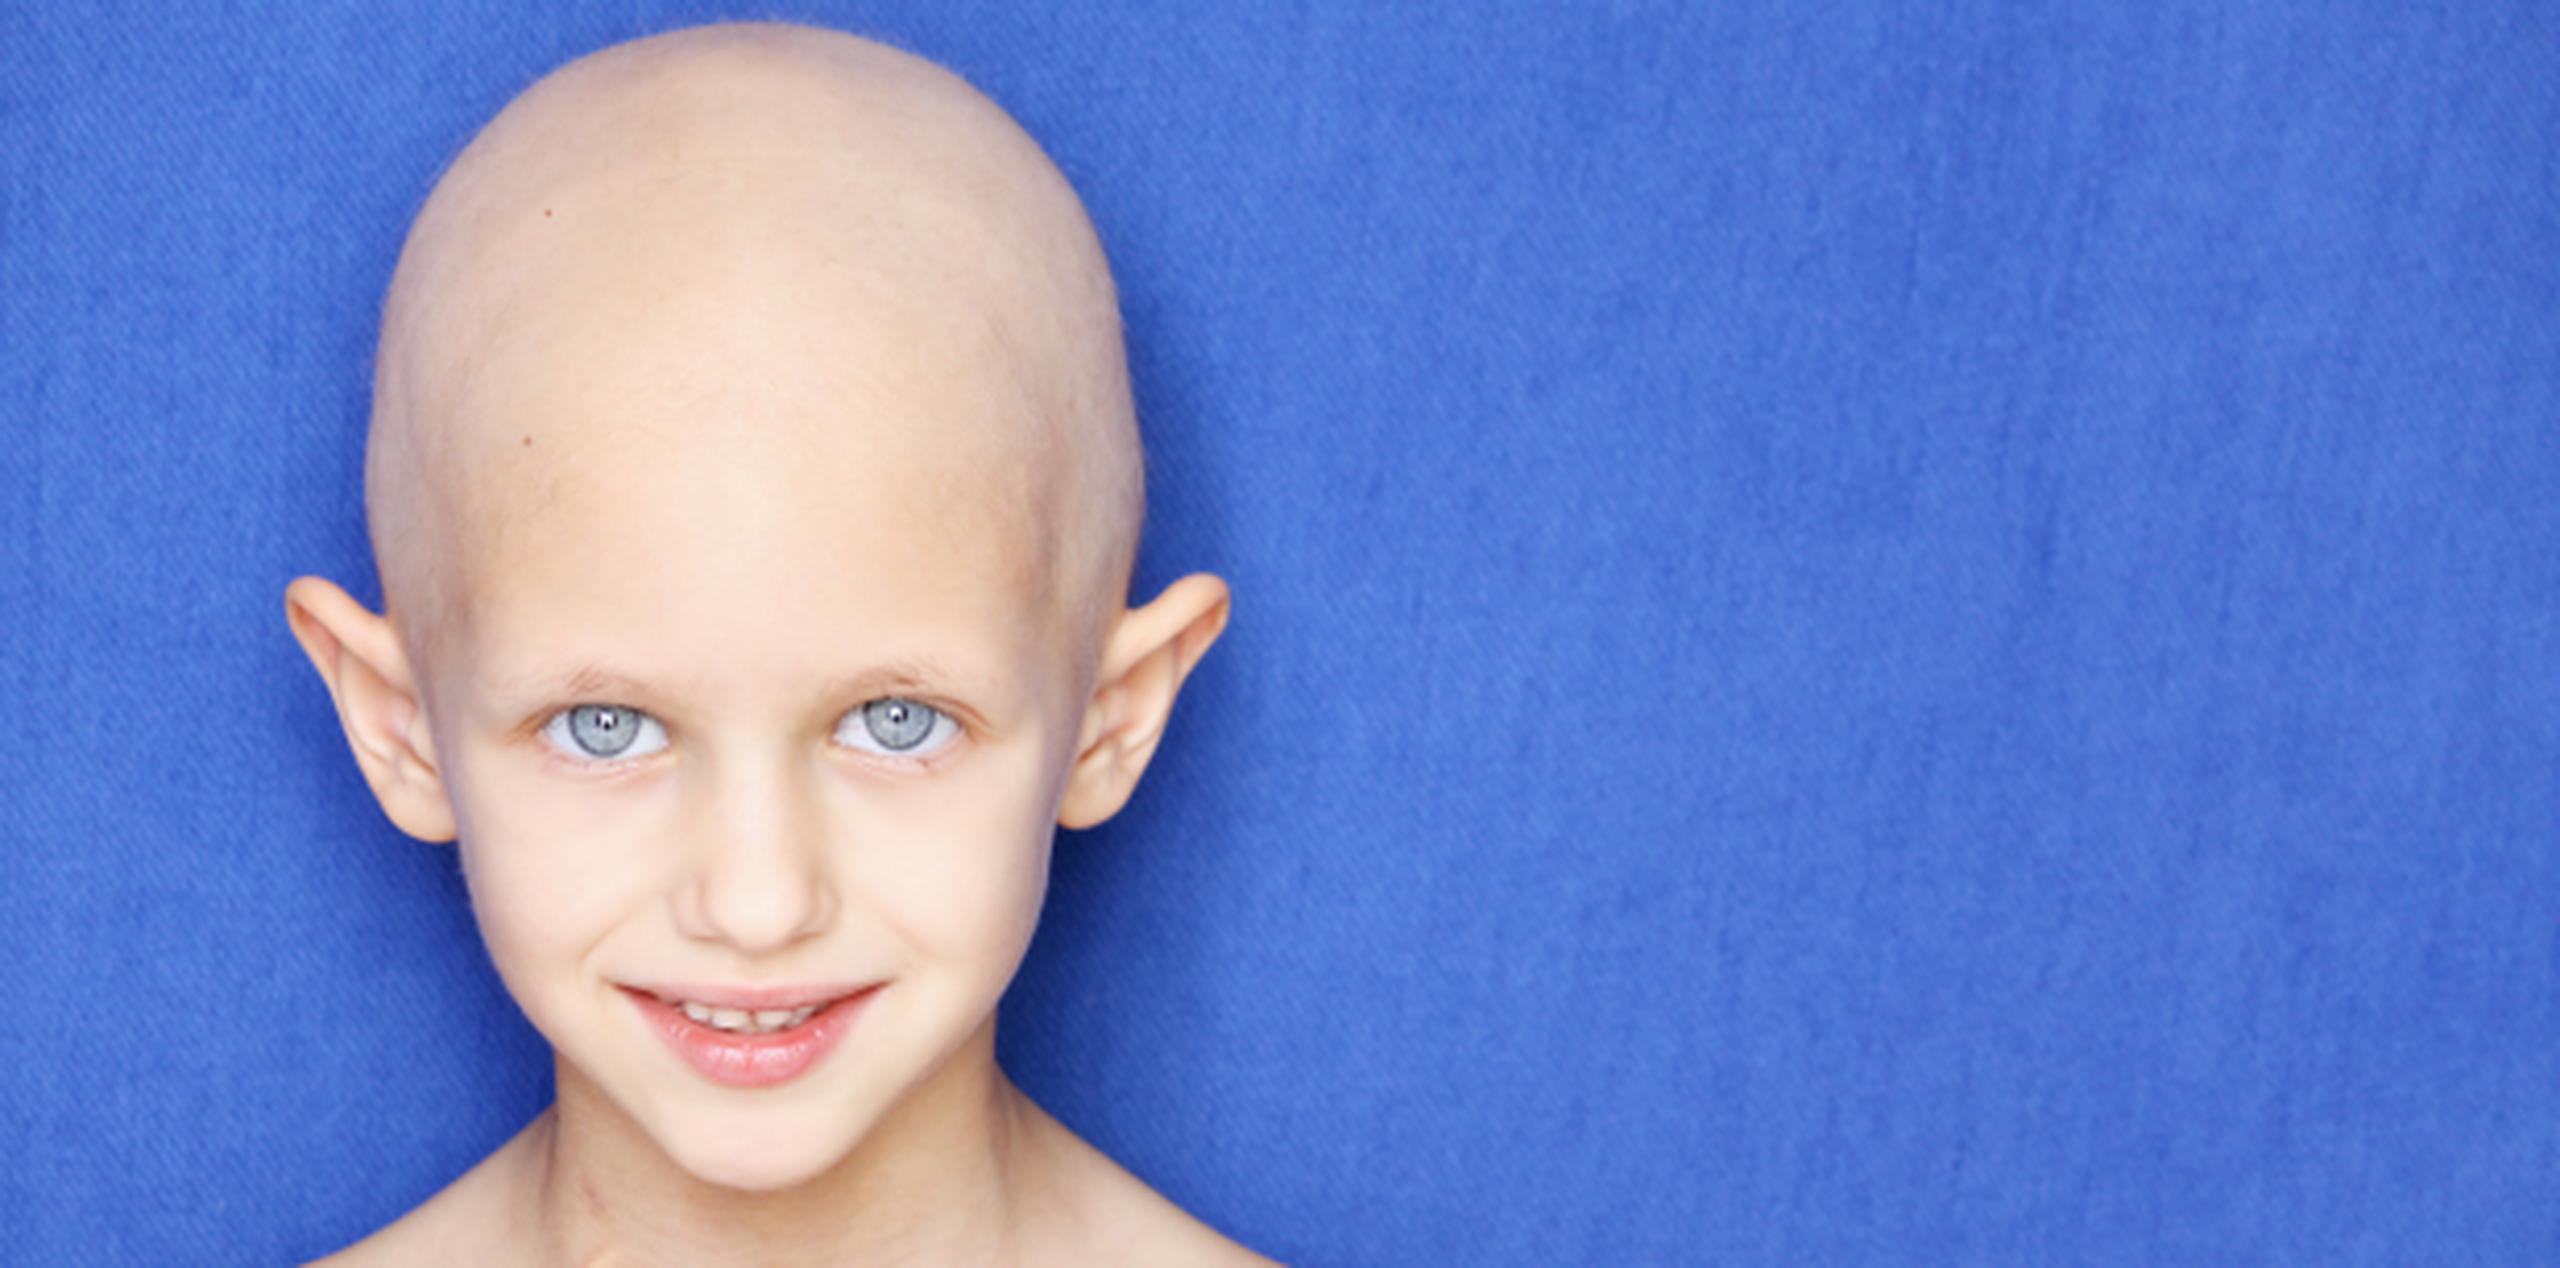 El cáncer es la cuarta causa de muerte en los niños estadounidenses en general. (Shutterstock)